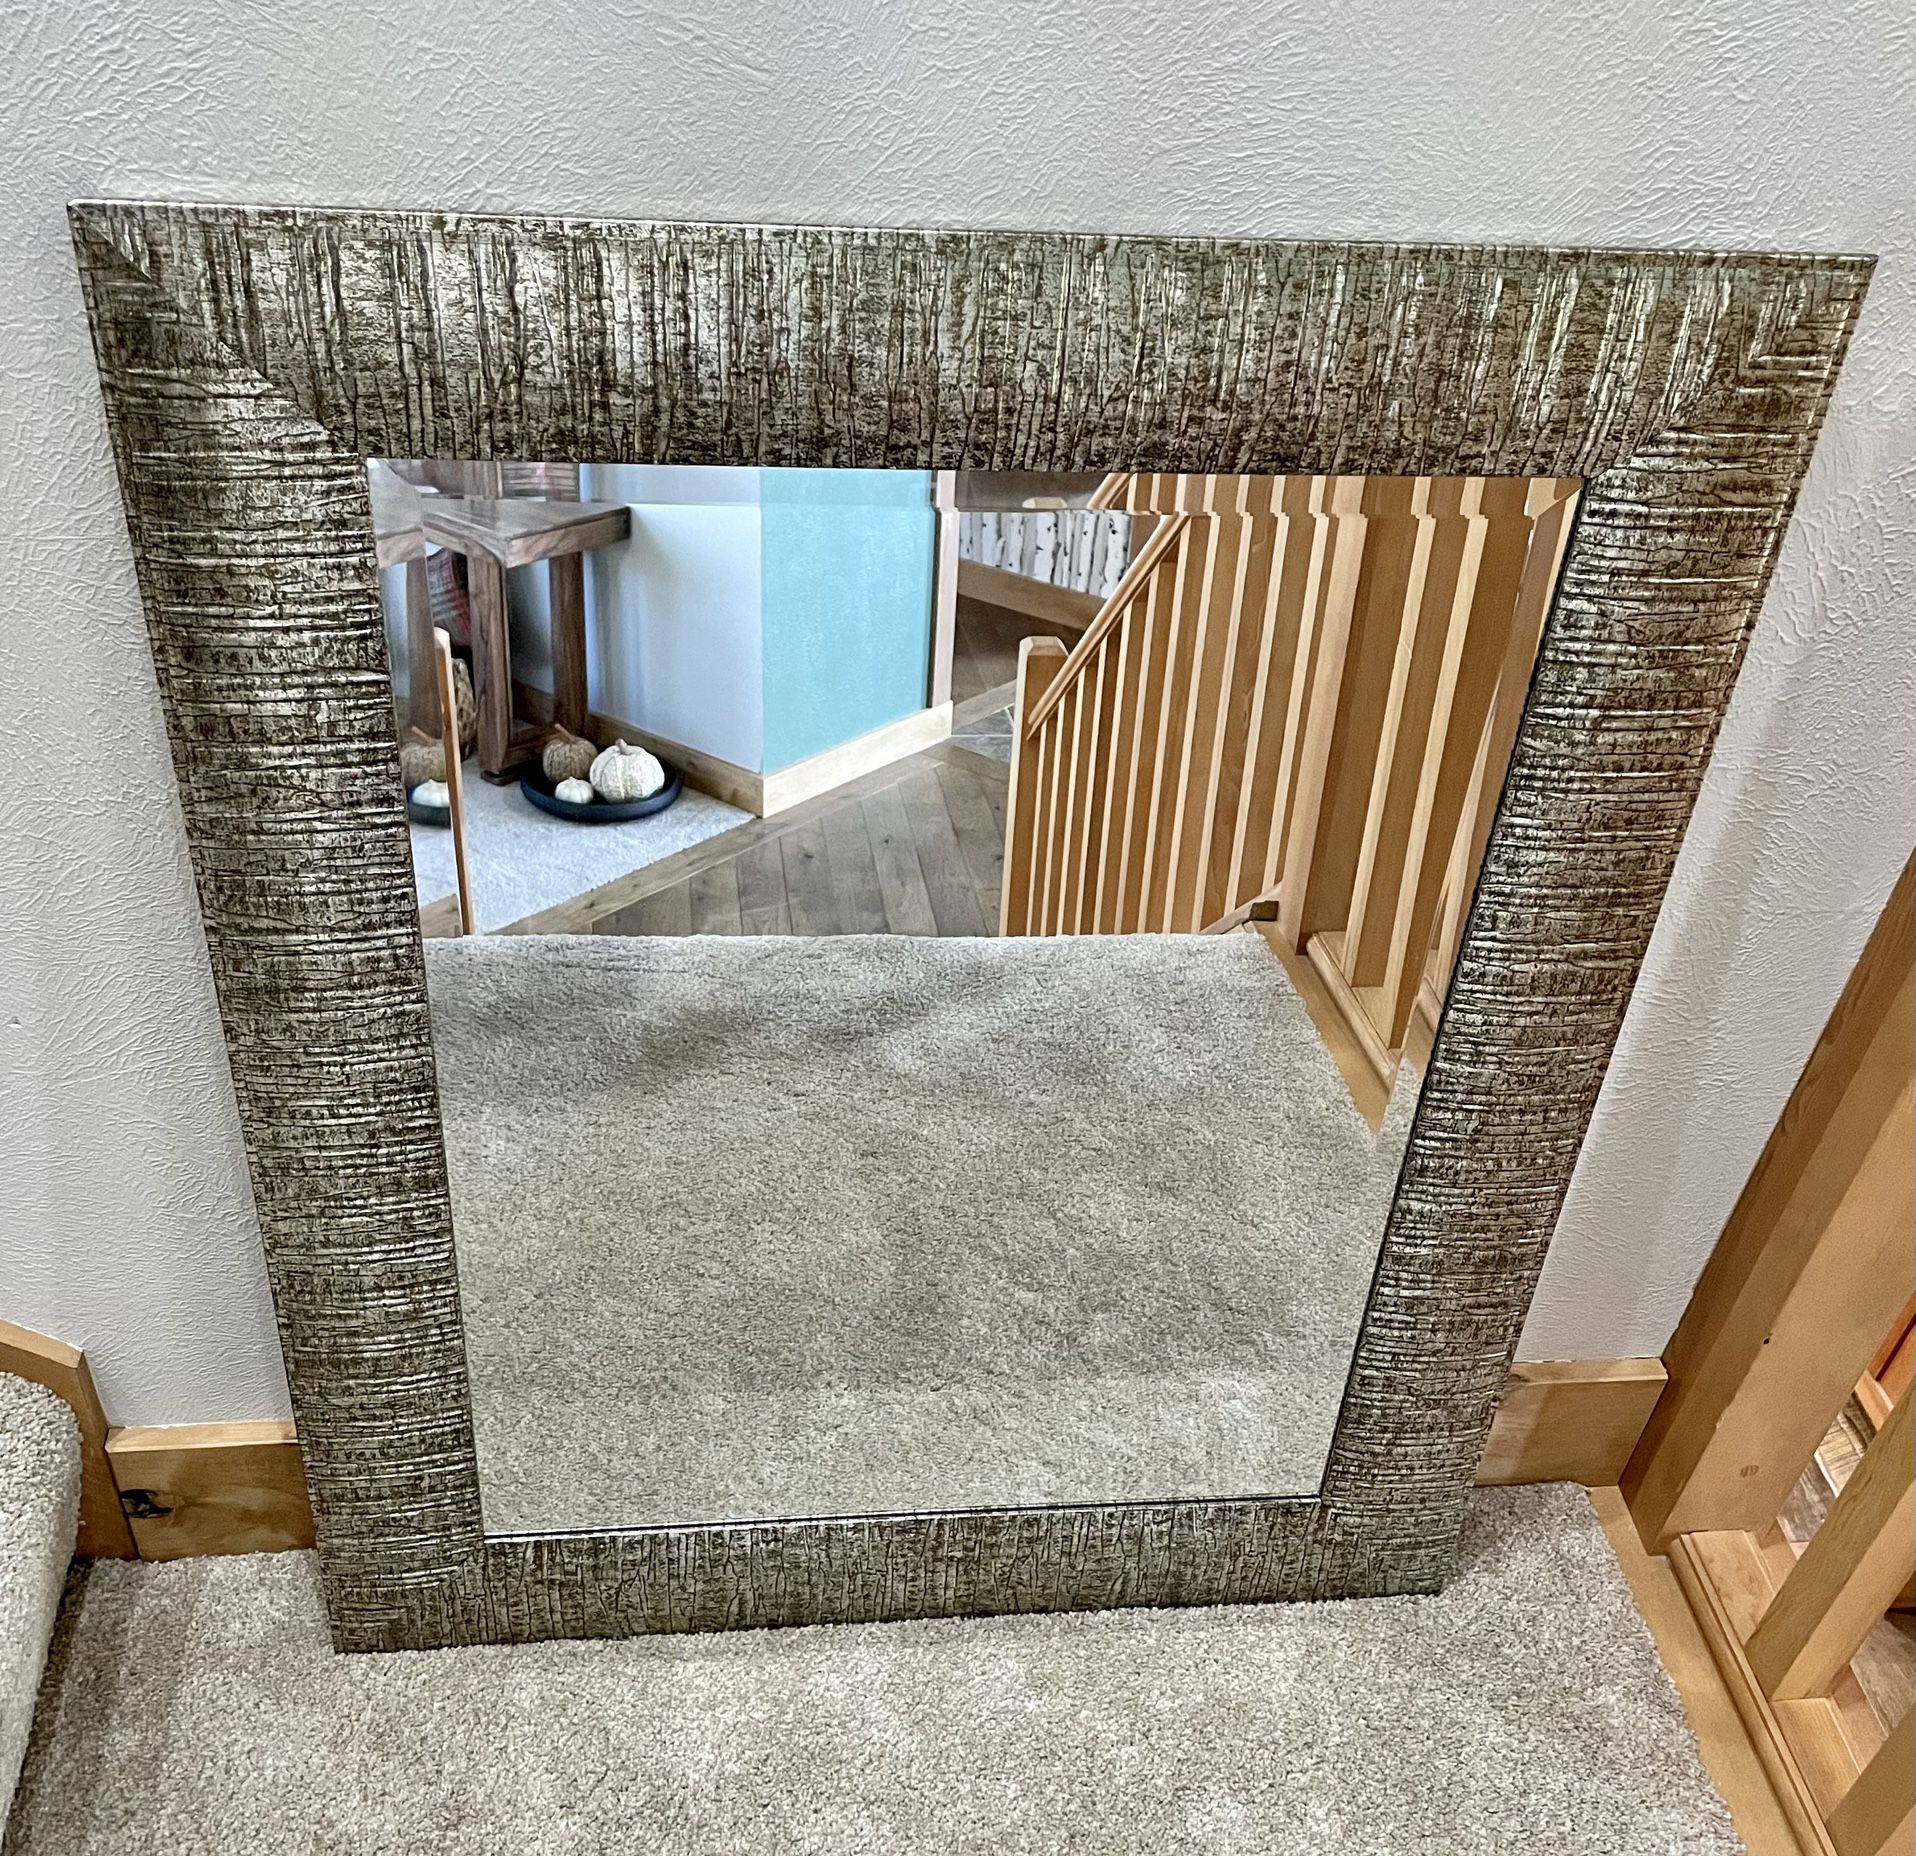 Modern Mirror